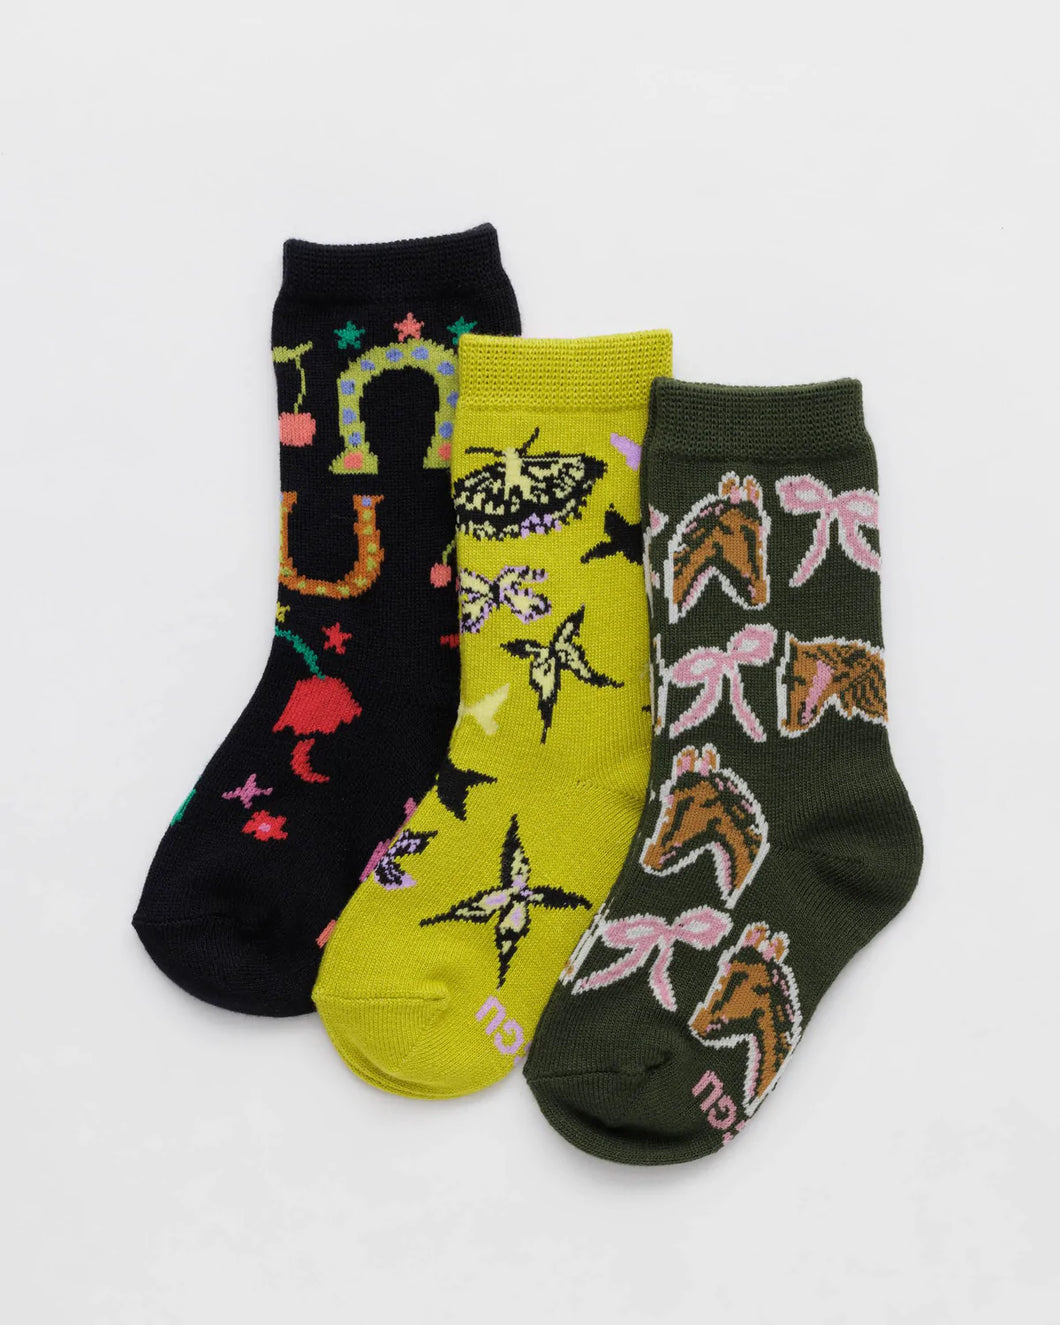 baggu - kids crew socks - jessica williams - save 70%